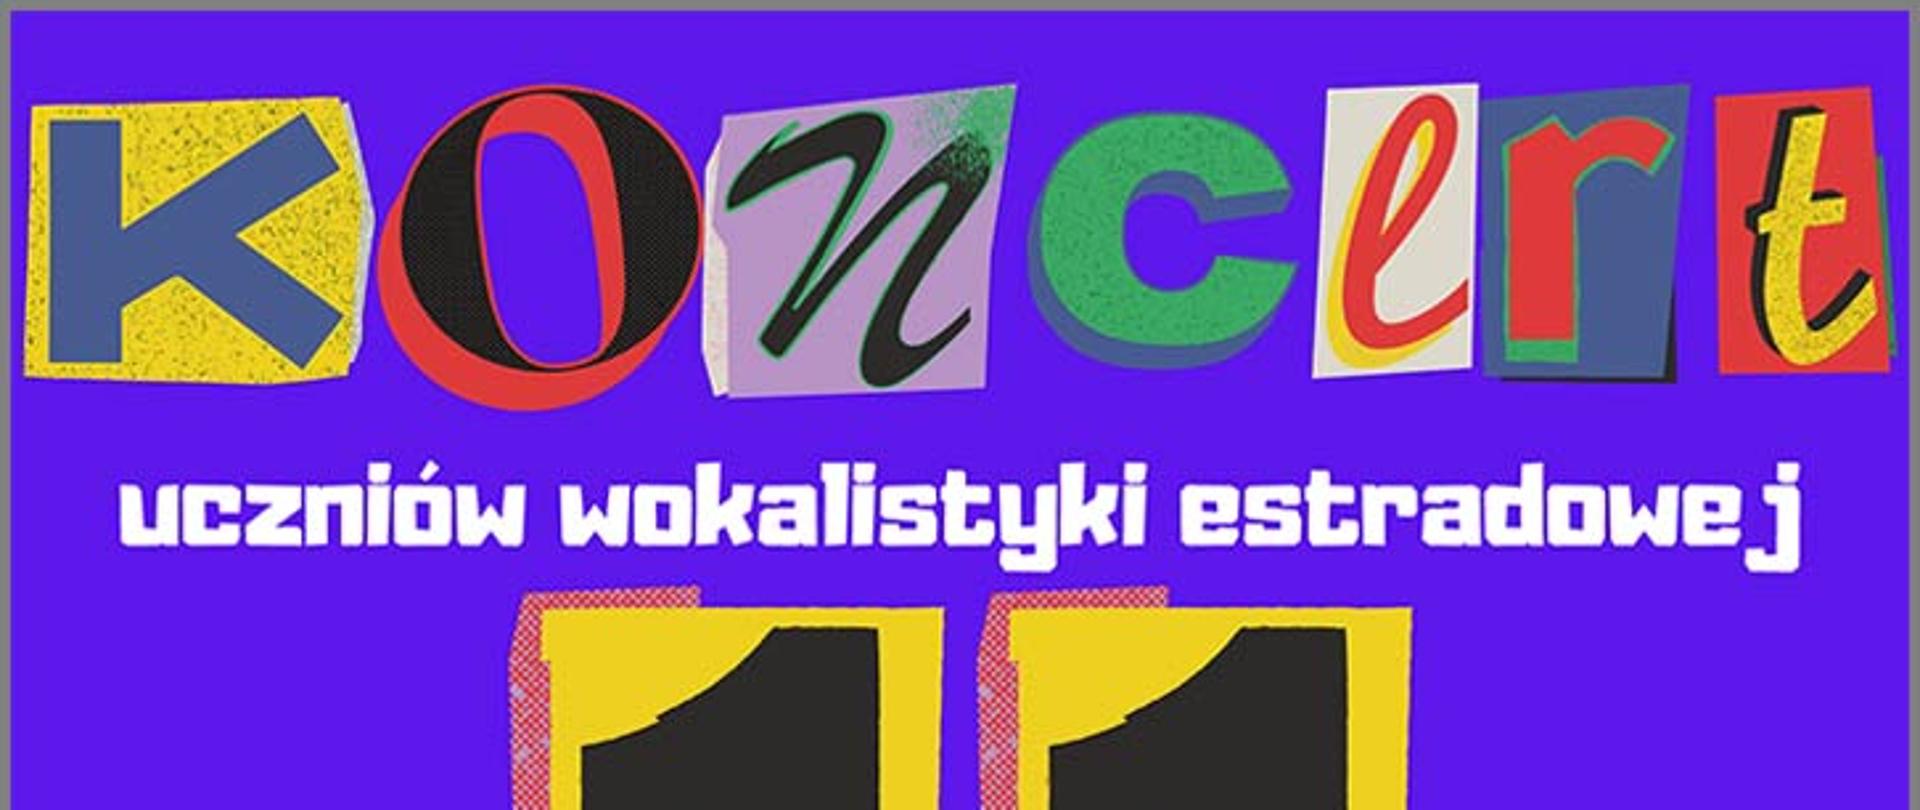 Afisz koncertu uczniów sekcji Wokalno-Estradowej - 11 marca 2022